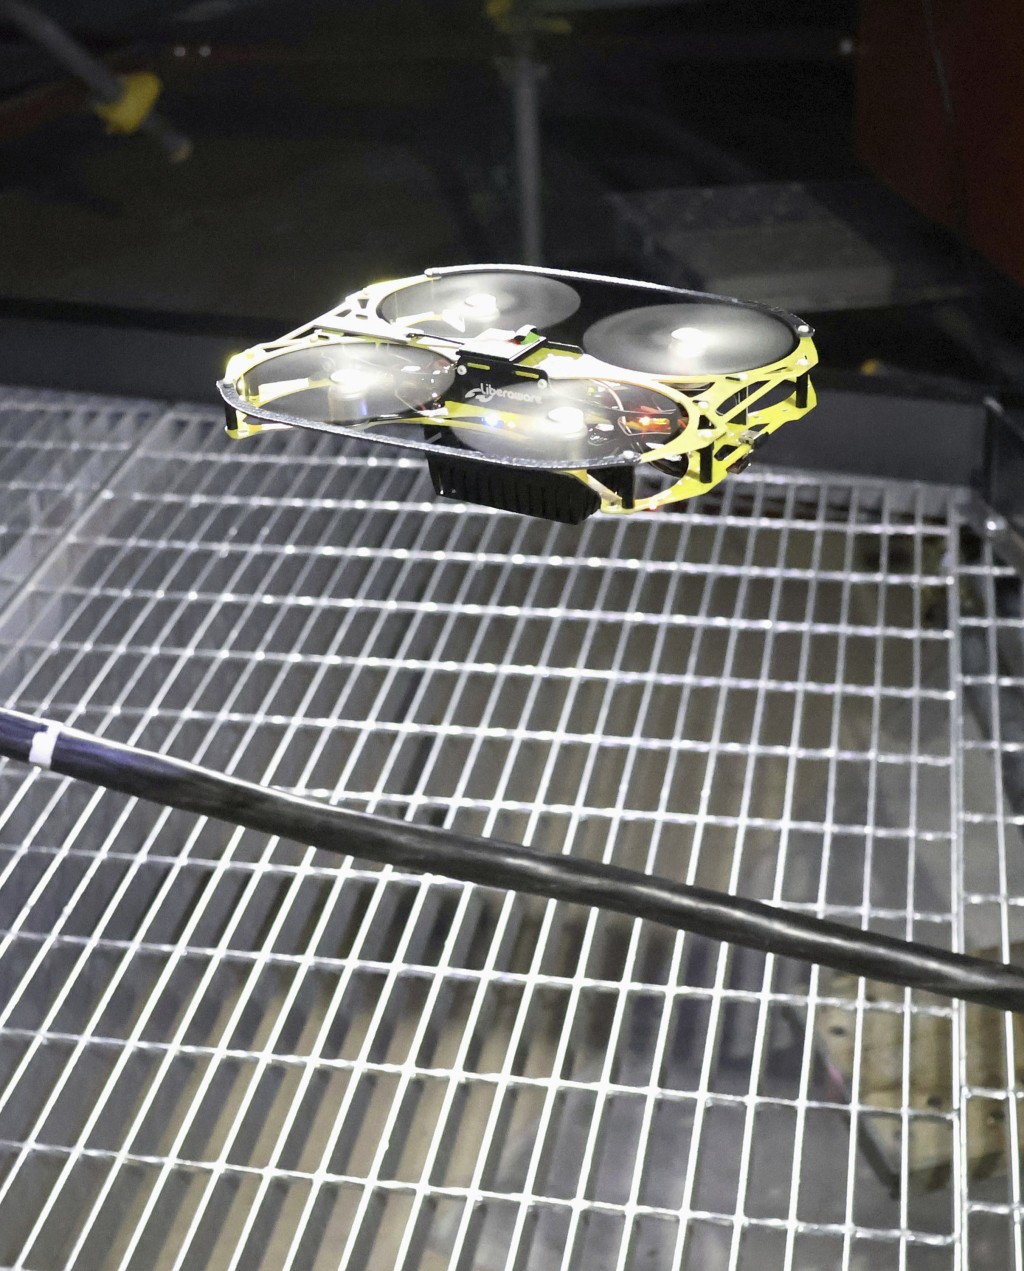 蛇型机器人负责为无人机中转无线信号，用于调查福岛第一核电站1号机组反应堆安全壳内未积水区域。。美联社